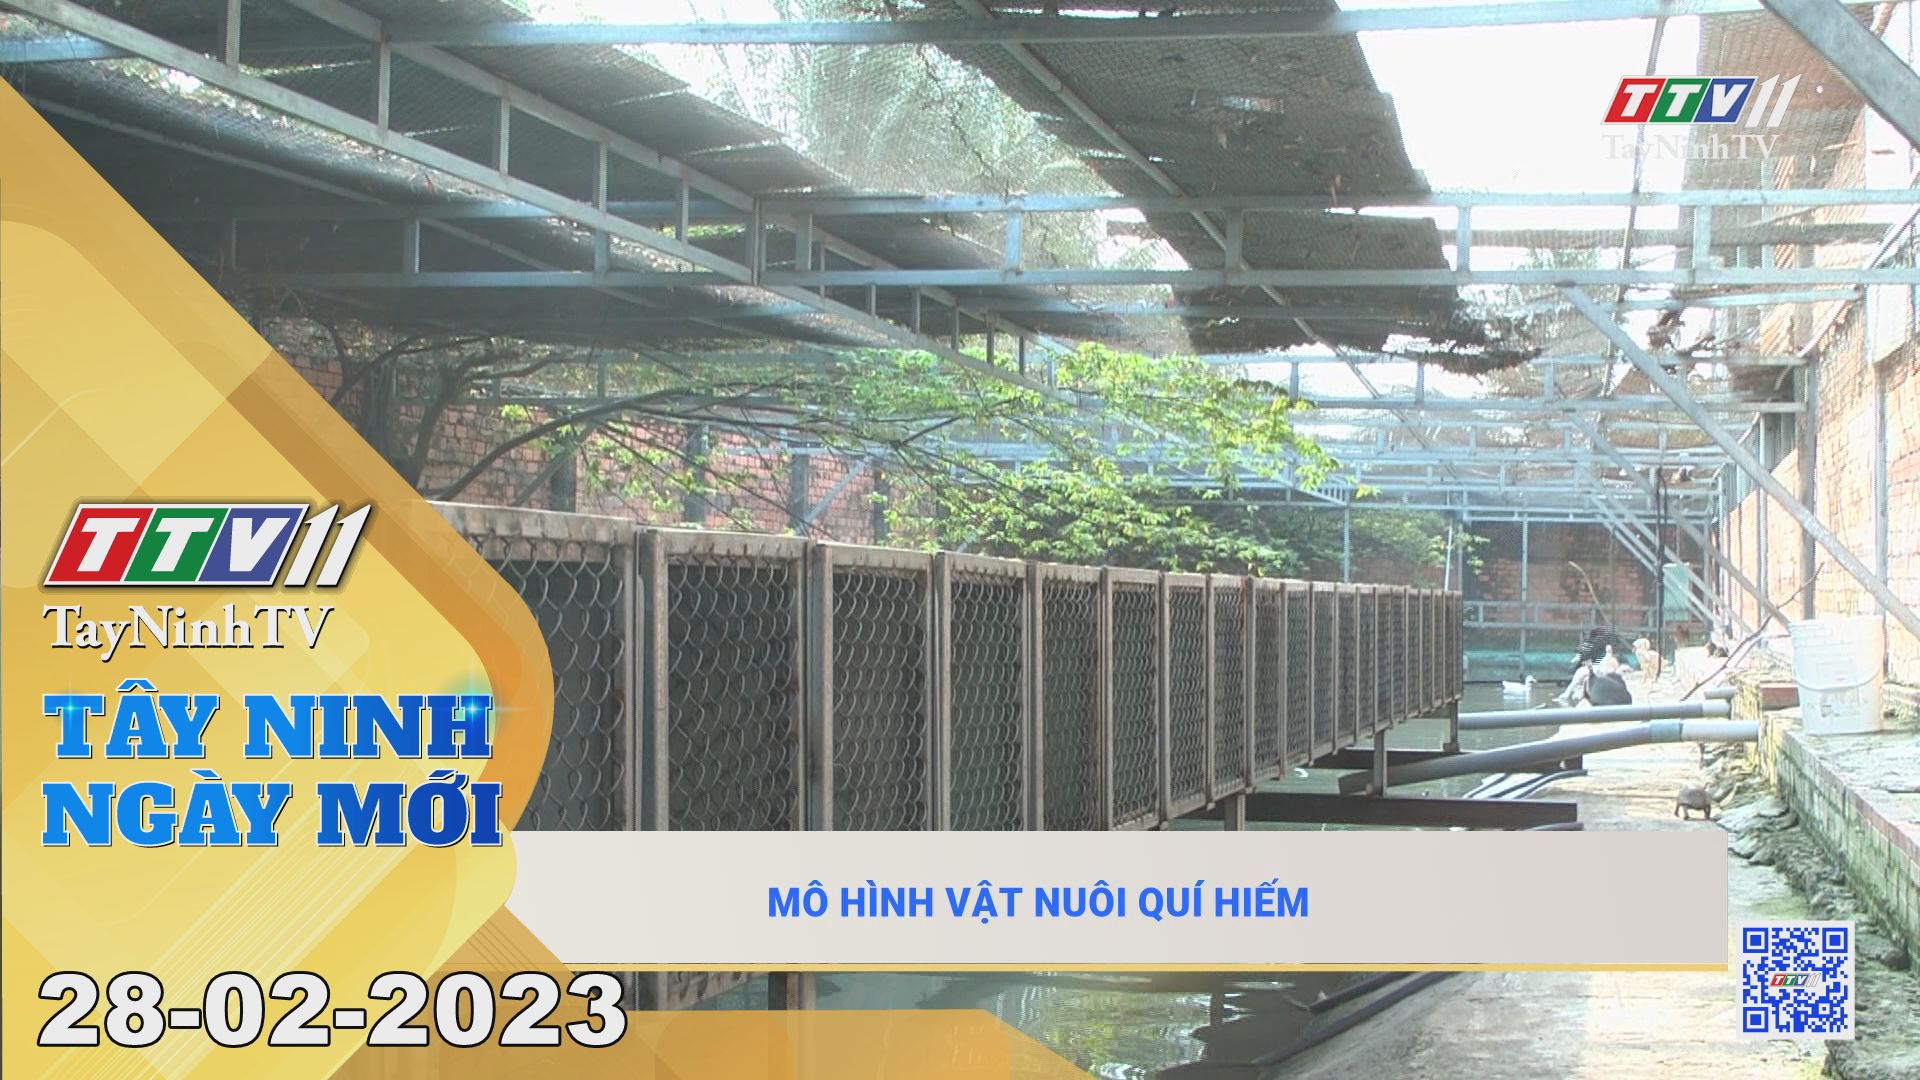 Tây Ninh ngày mới 28-02-2023 | Tin tức hôm nay | TayNinhTV